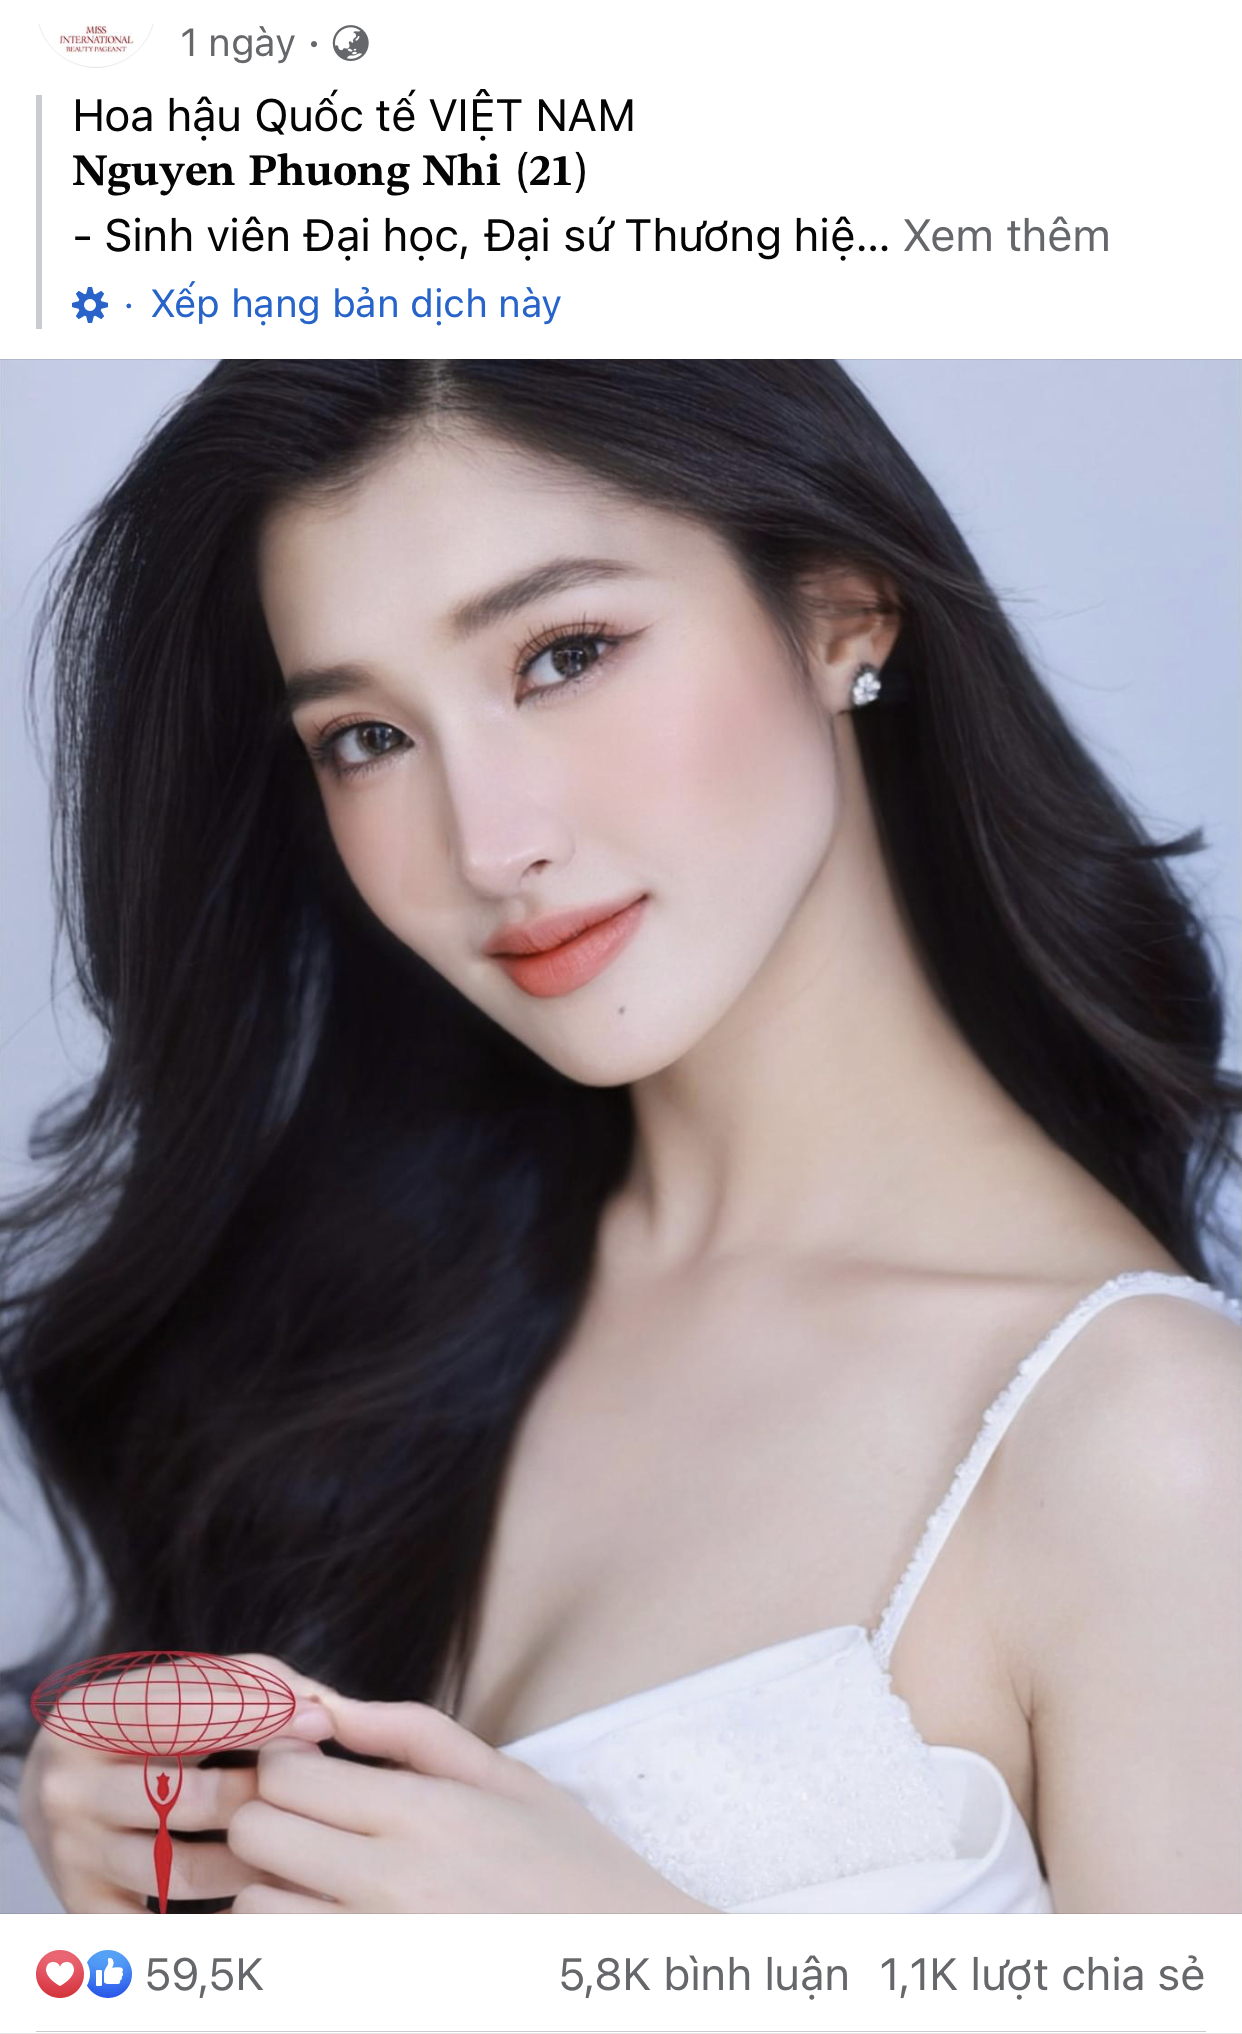 Trang chủ Miss International đăng ảnh thí sinh, Á hậu Phương Nhi khiến fan &quot;phổng mũi&quot; tự hào vì điều này - Ảnh 1.